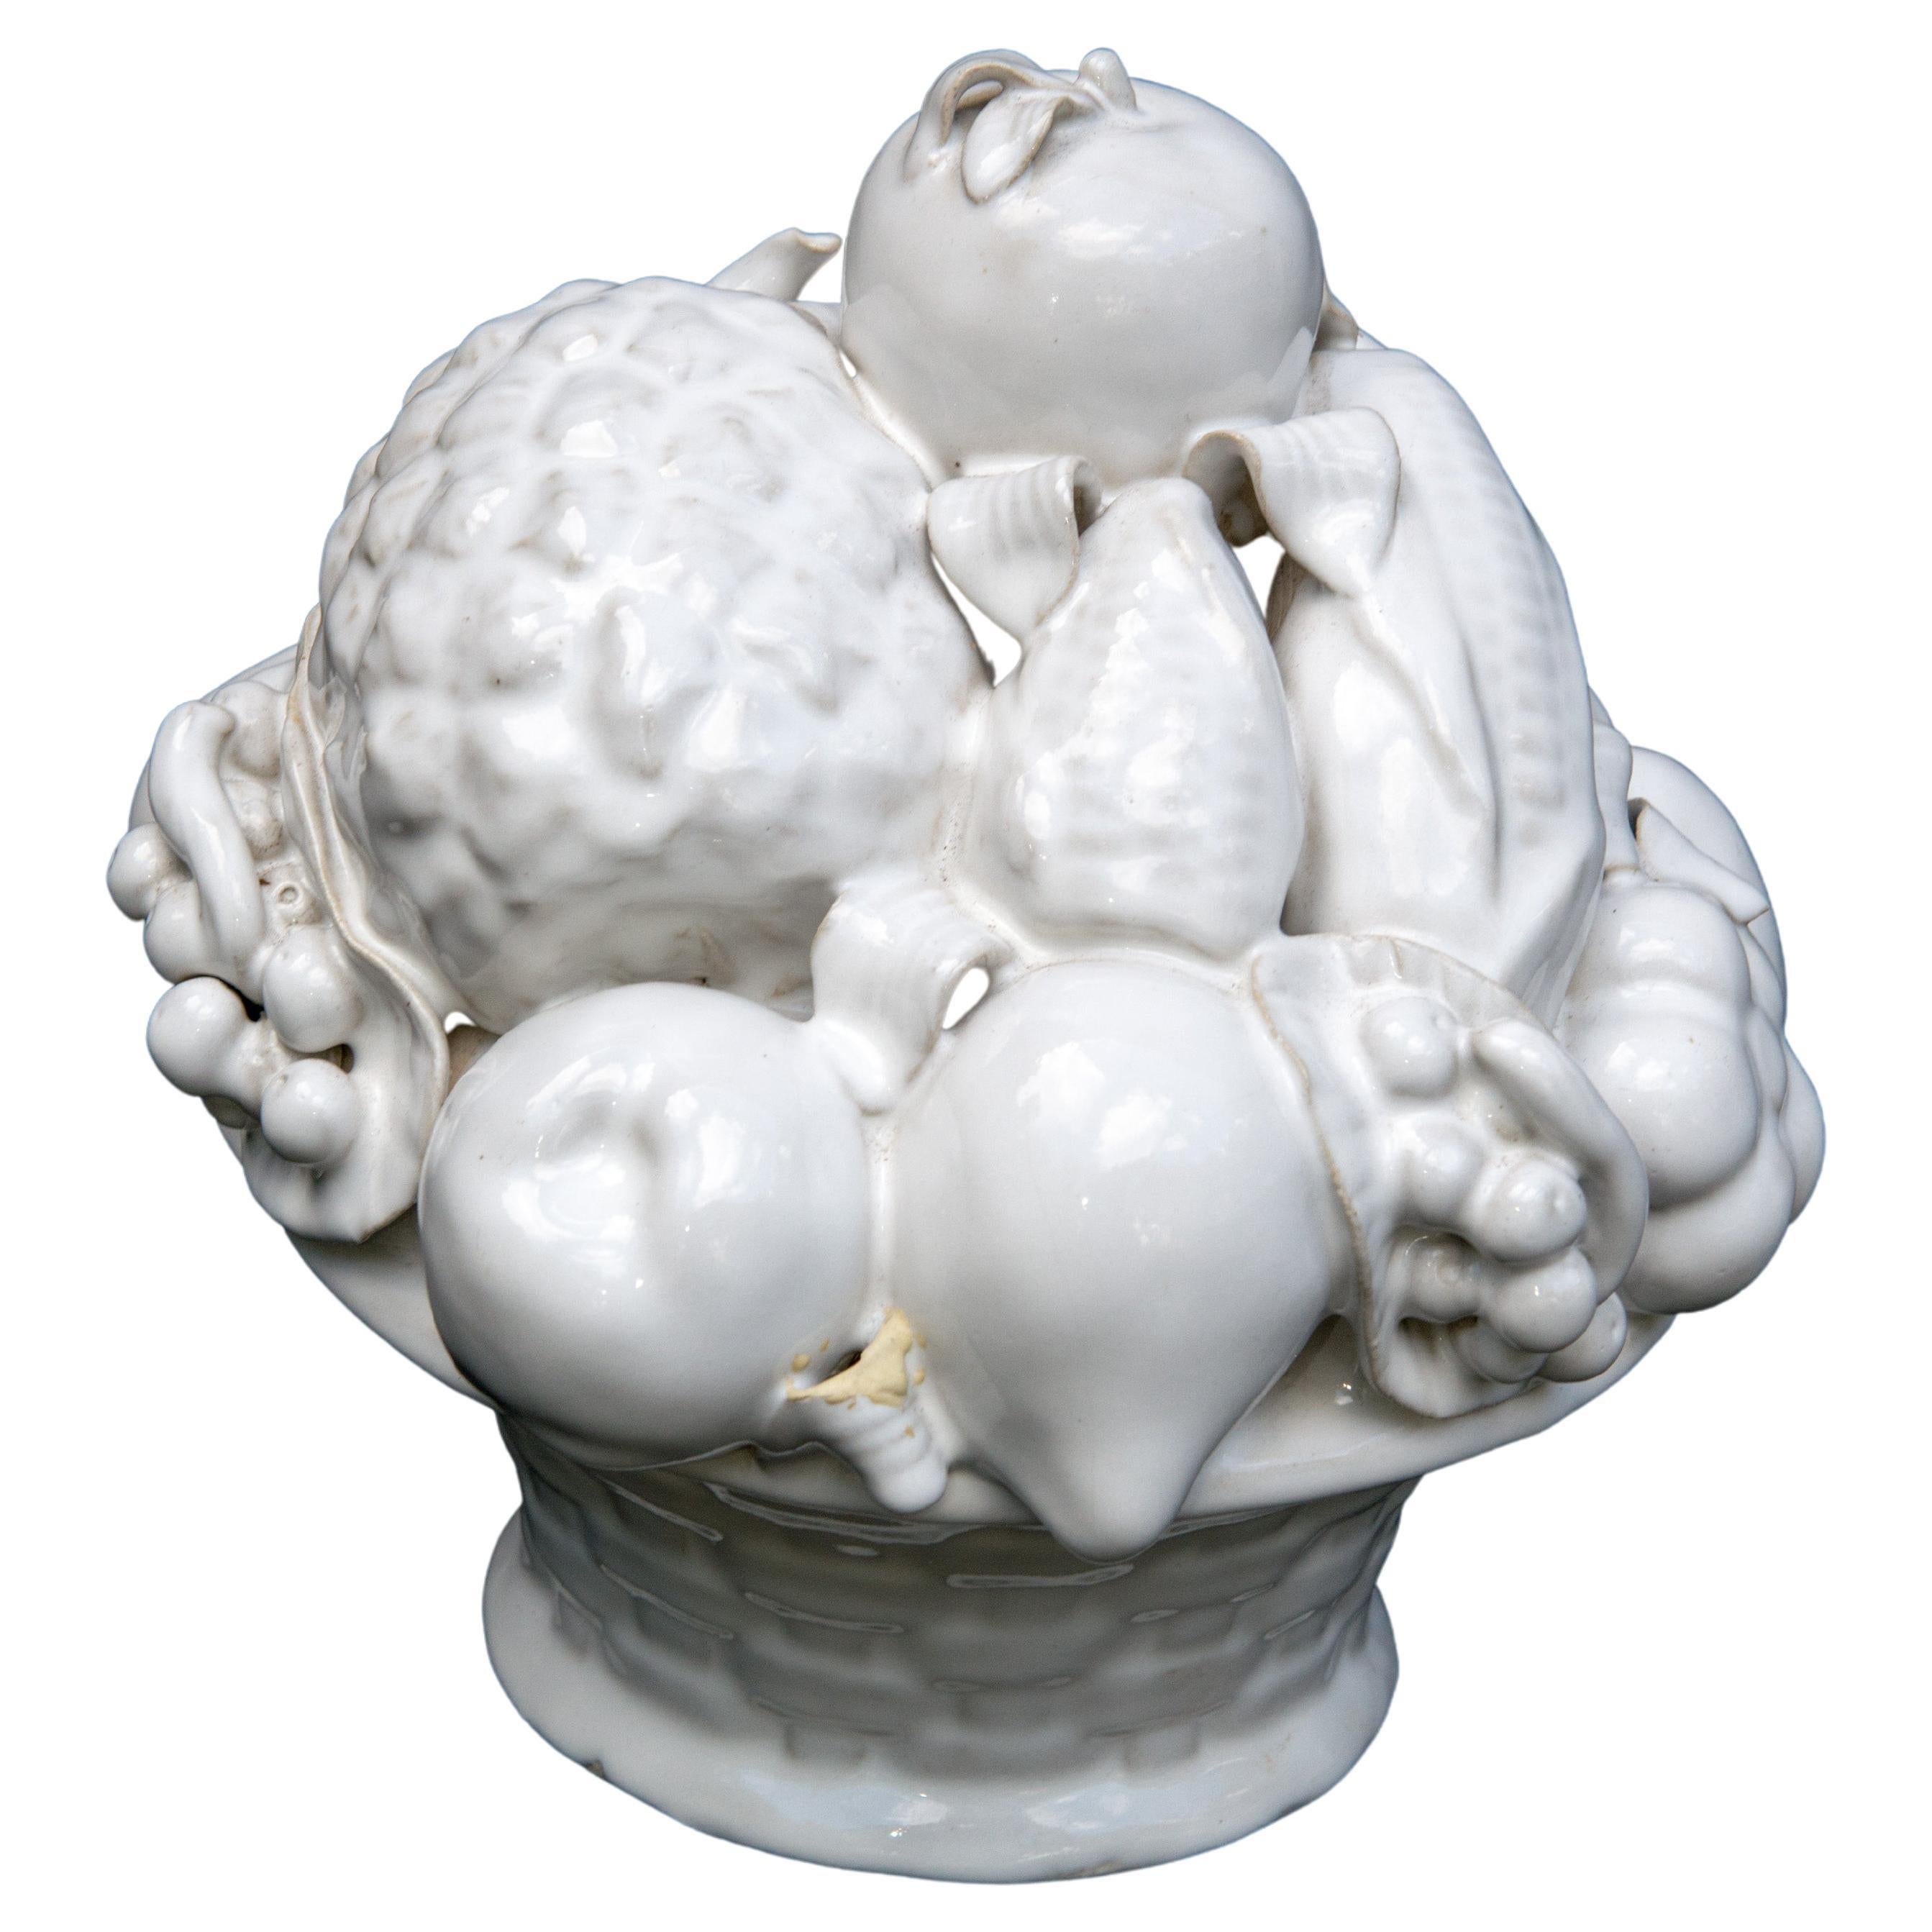 Weiß glasierter Keramikkorb mit Früchten, wahrscheinlich italienisch. Der Stiel der Ananas ist mit einem kleinen Schaden repariert worden. Das Blatt einer anderen Frucht hat zwei nicht zusammenpassende Füllbereiche. Dennoch ist es ein